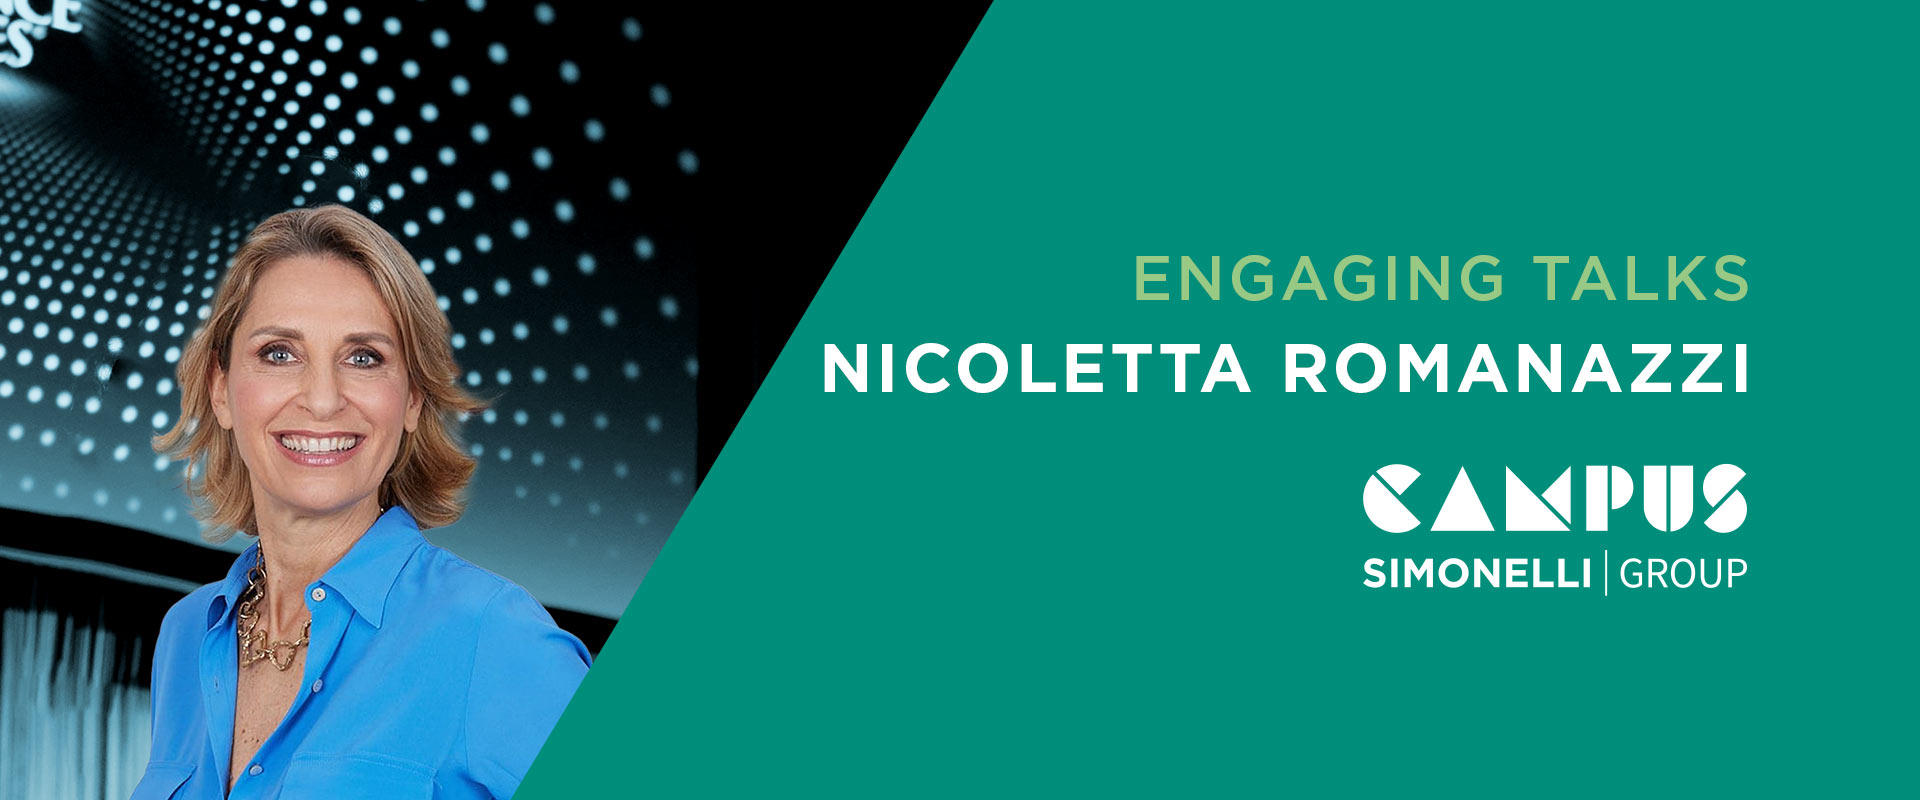 Il secondo appuntamento di Engaging Talks ospita Nicoletta Romanazzi